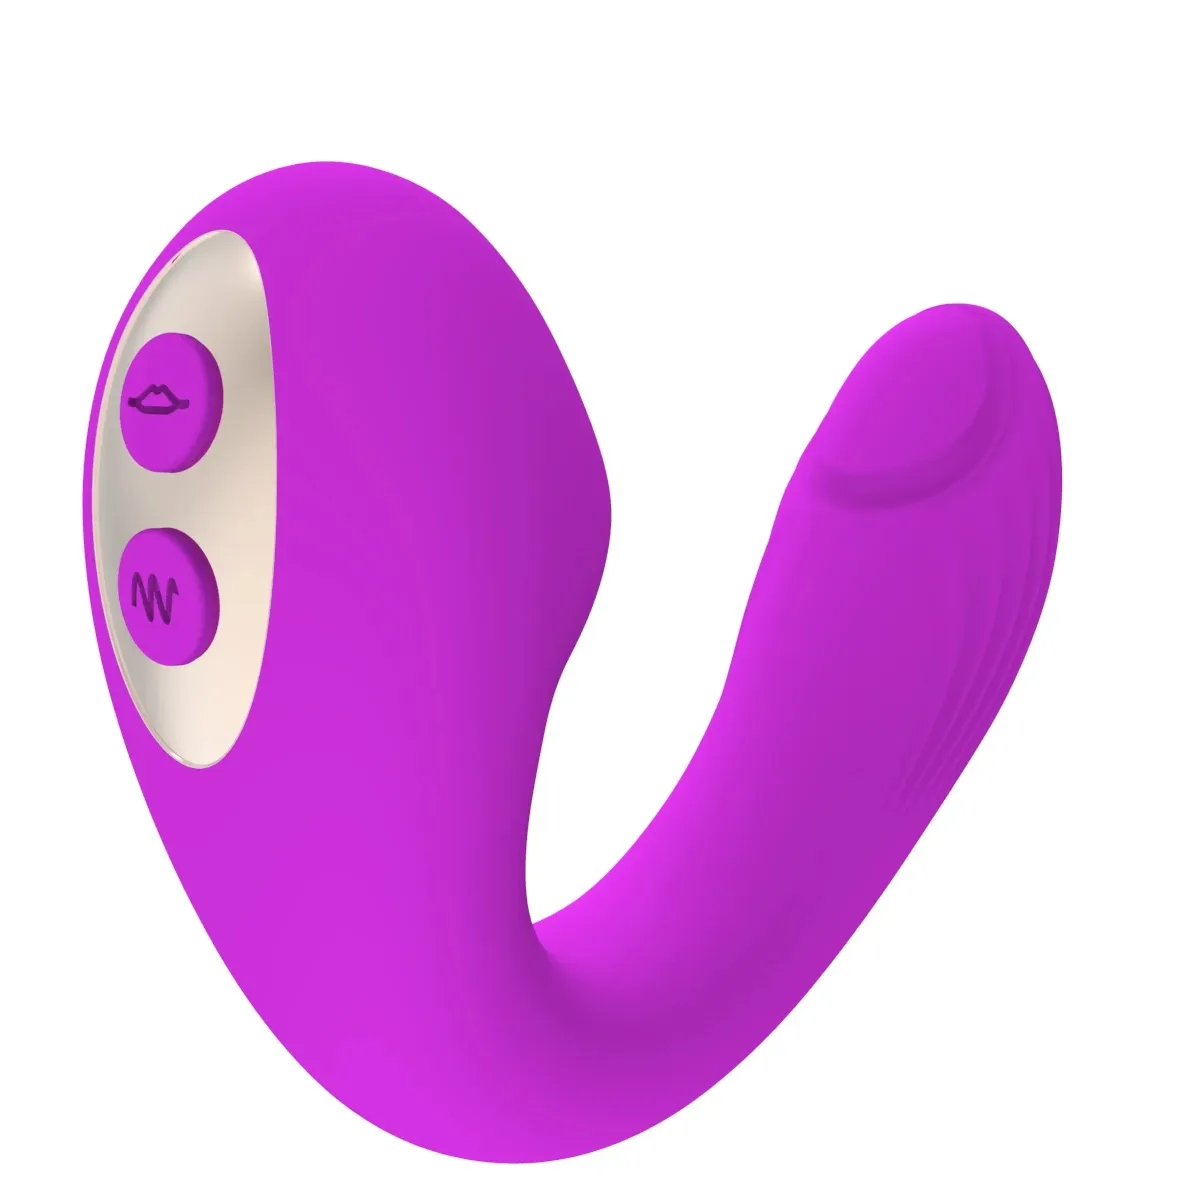 Mainan seks seks seks seks wanita Vibrator puting porno mainan seks xxxx mainan seks vagina mainan seks untuk wanita